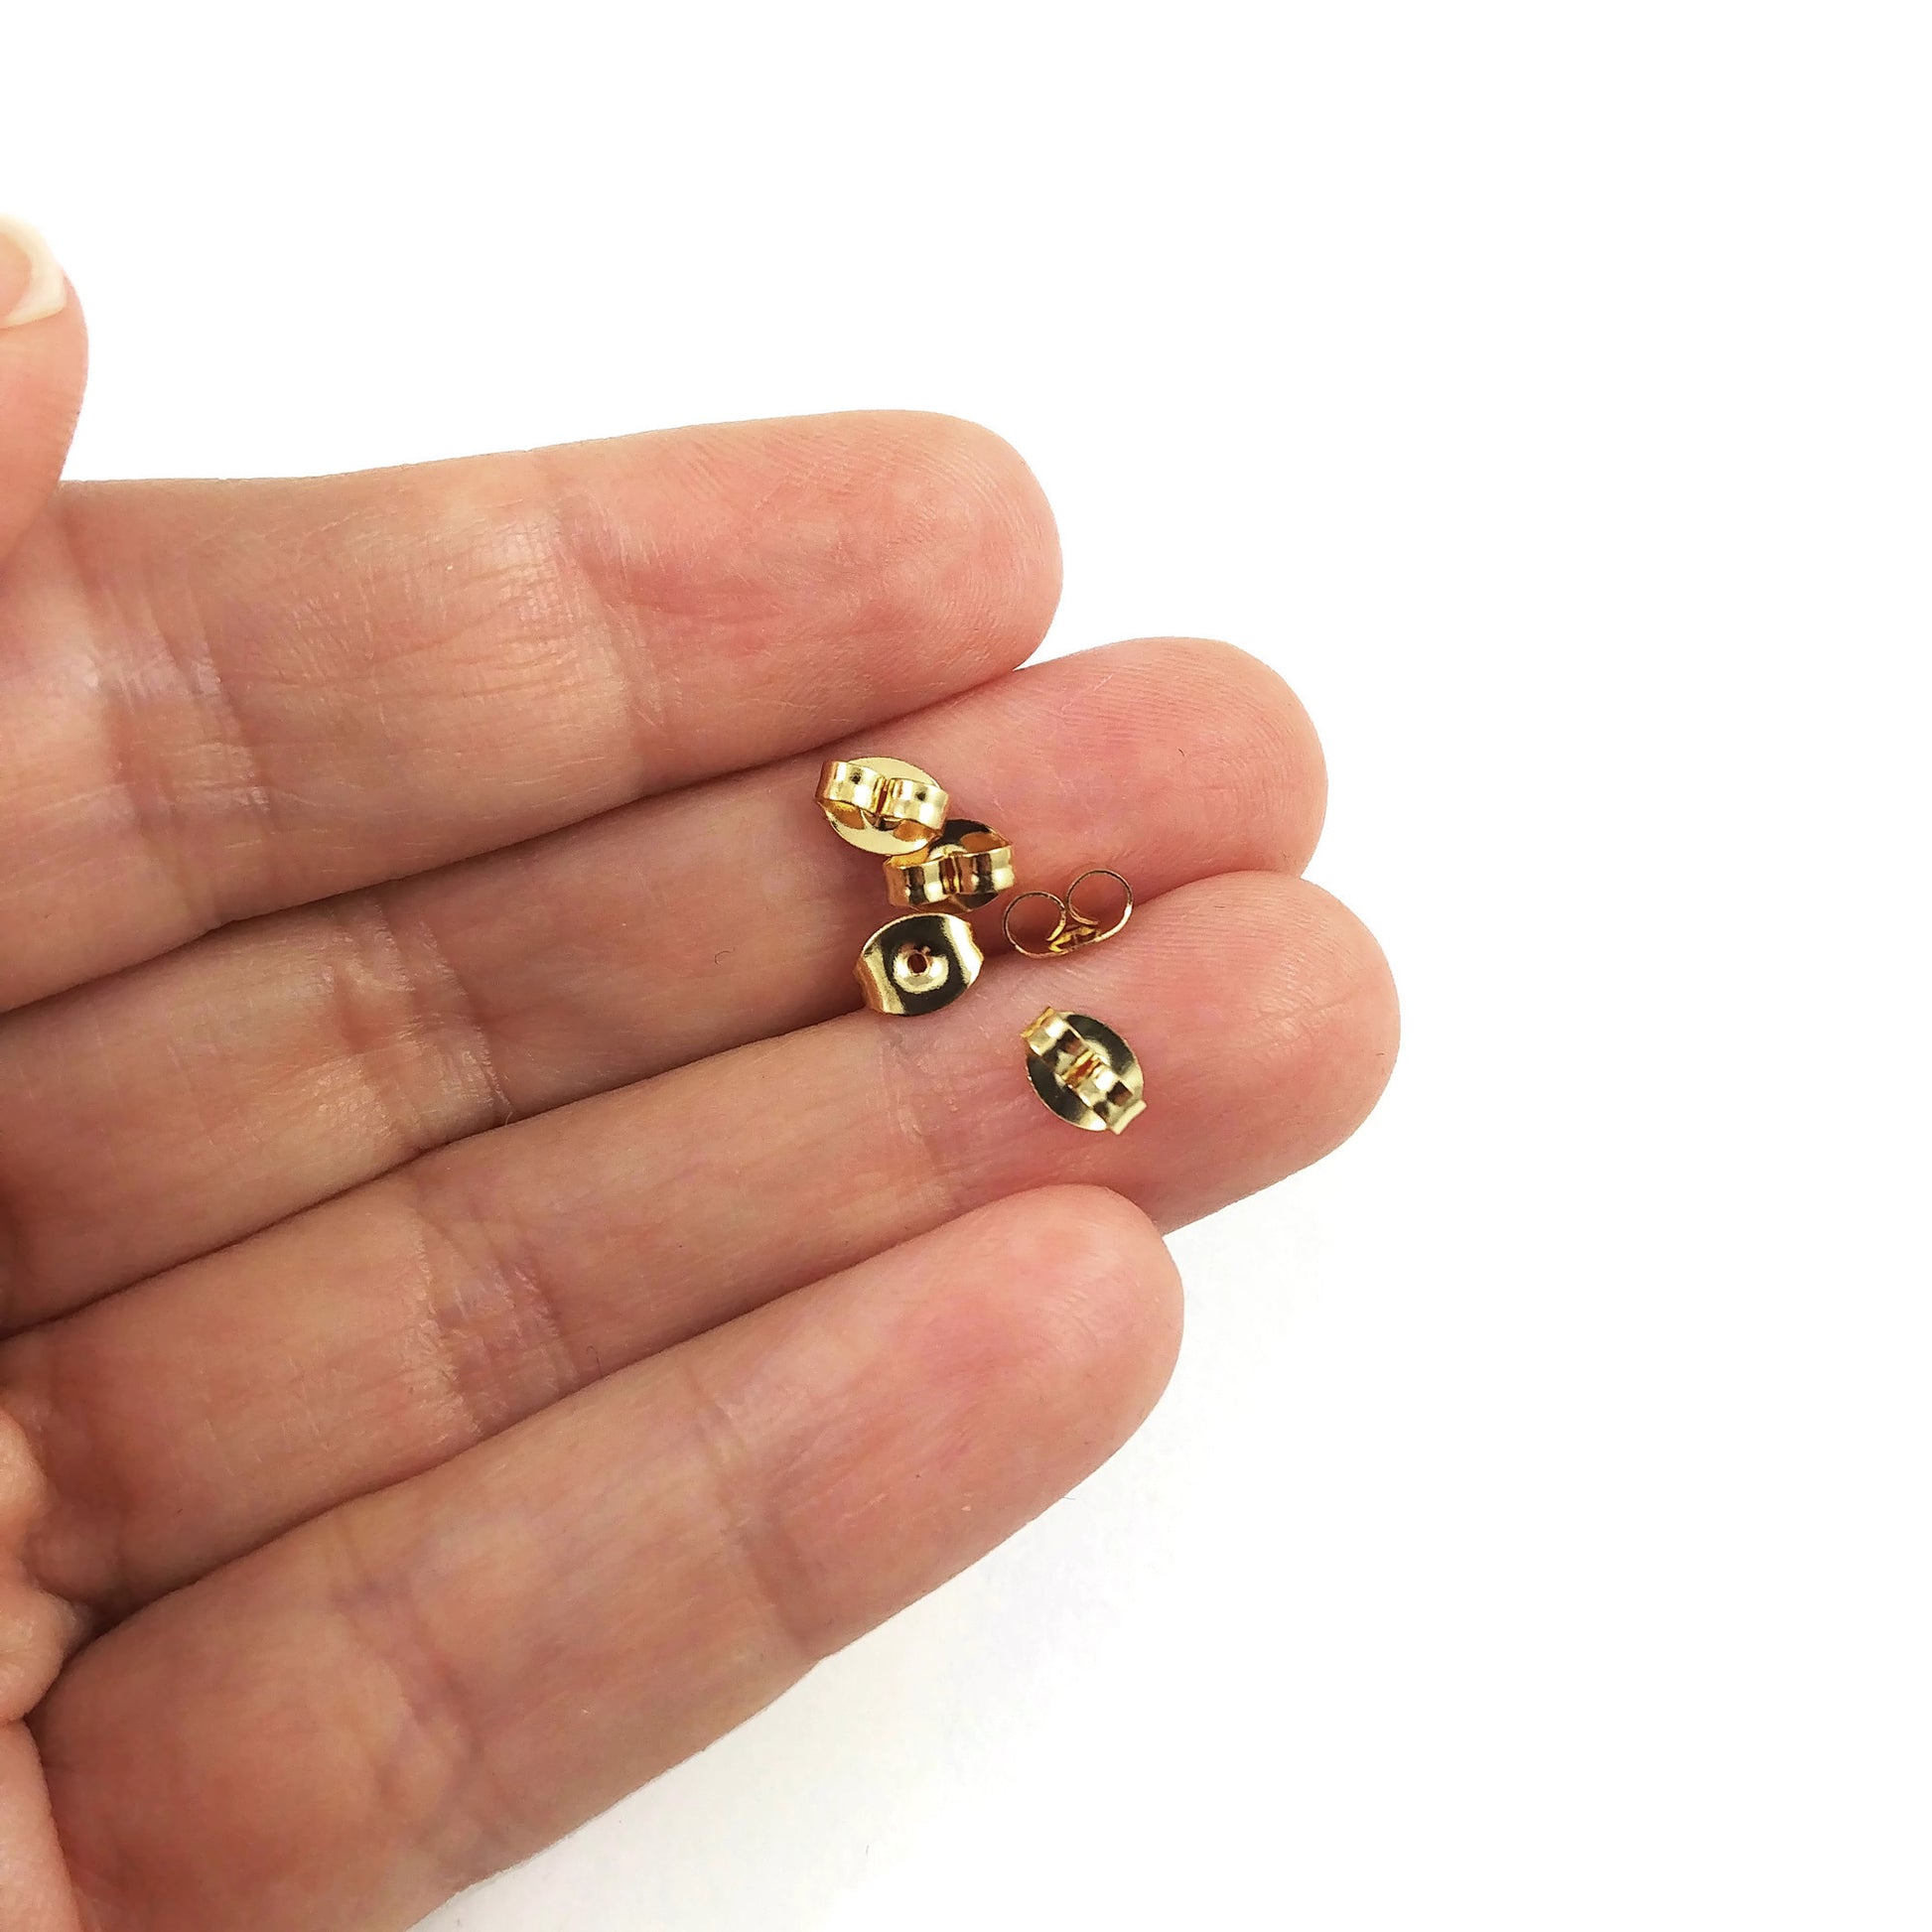 Golden earring back stopper stainless steel butterfly earnut hypoallergenic  6mm